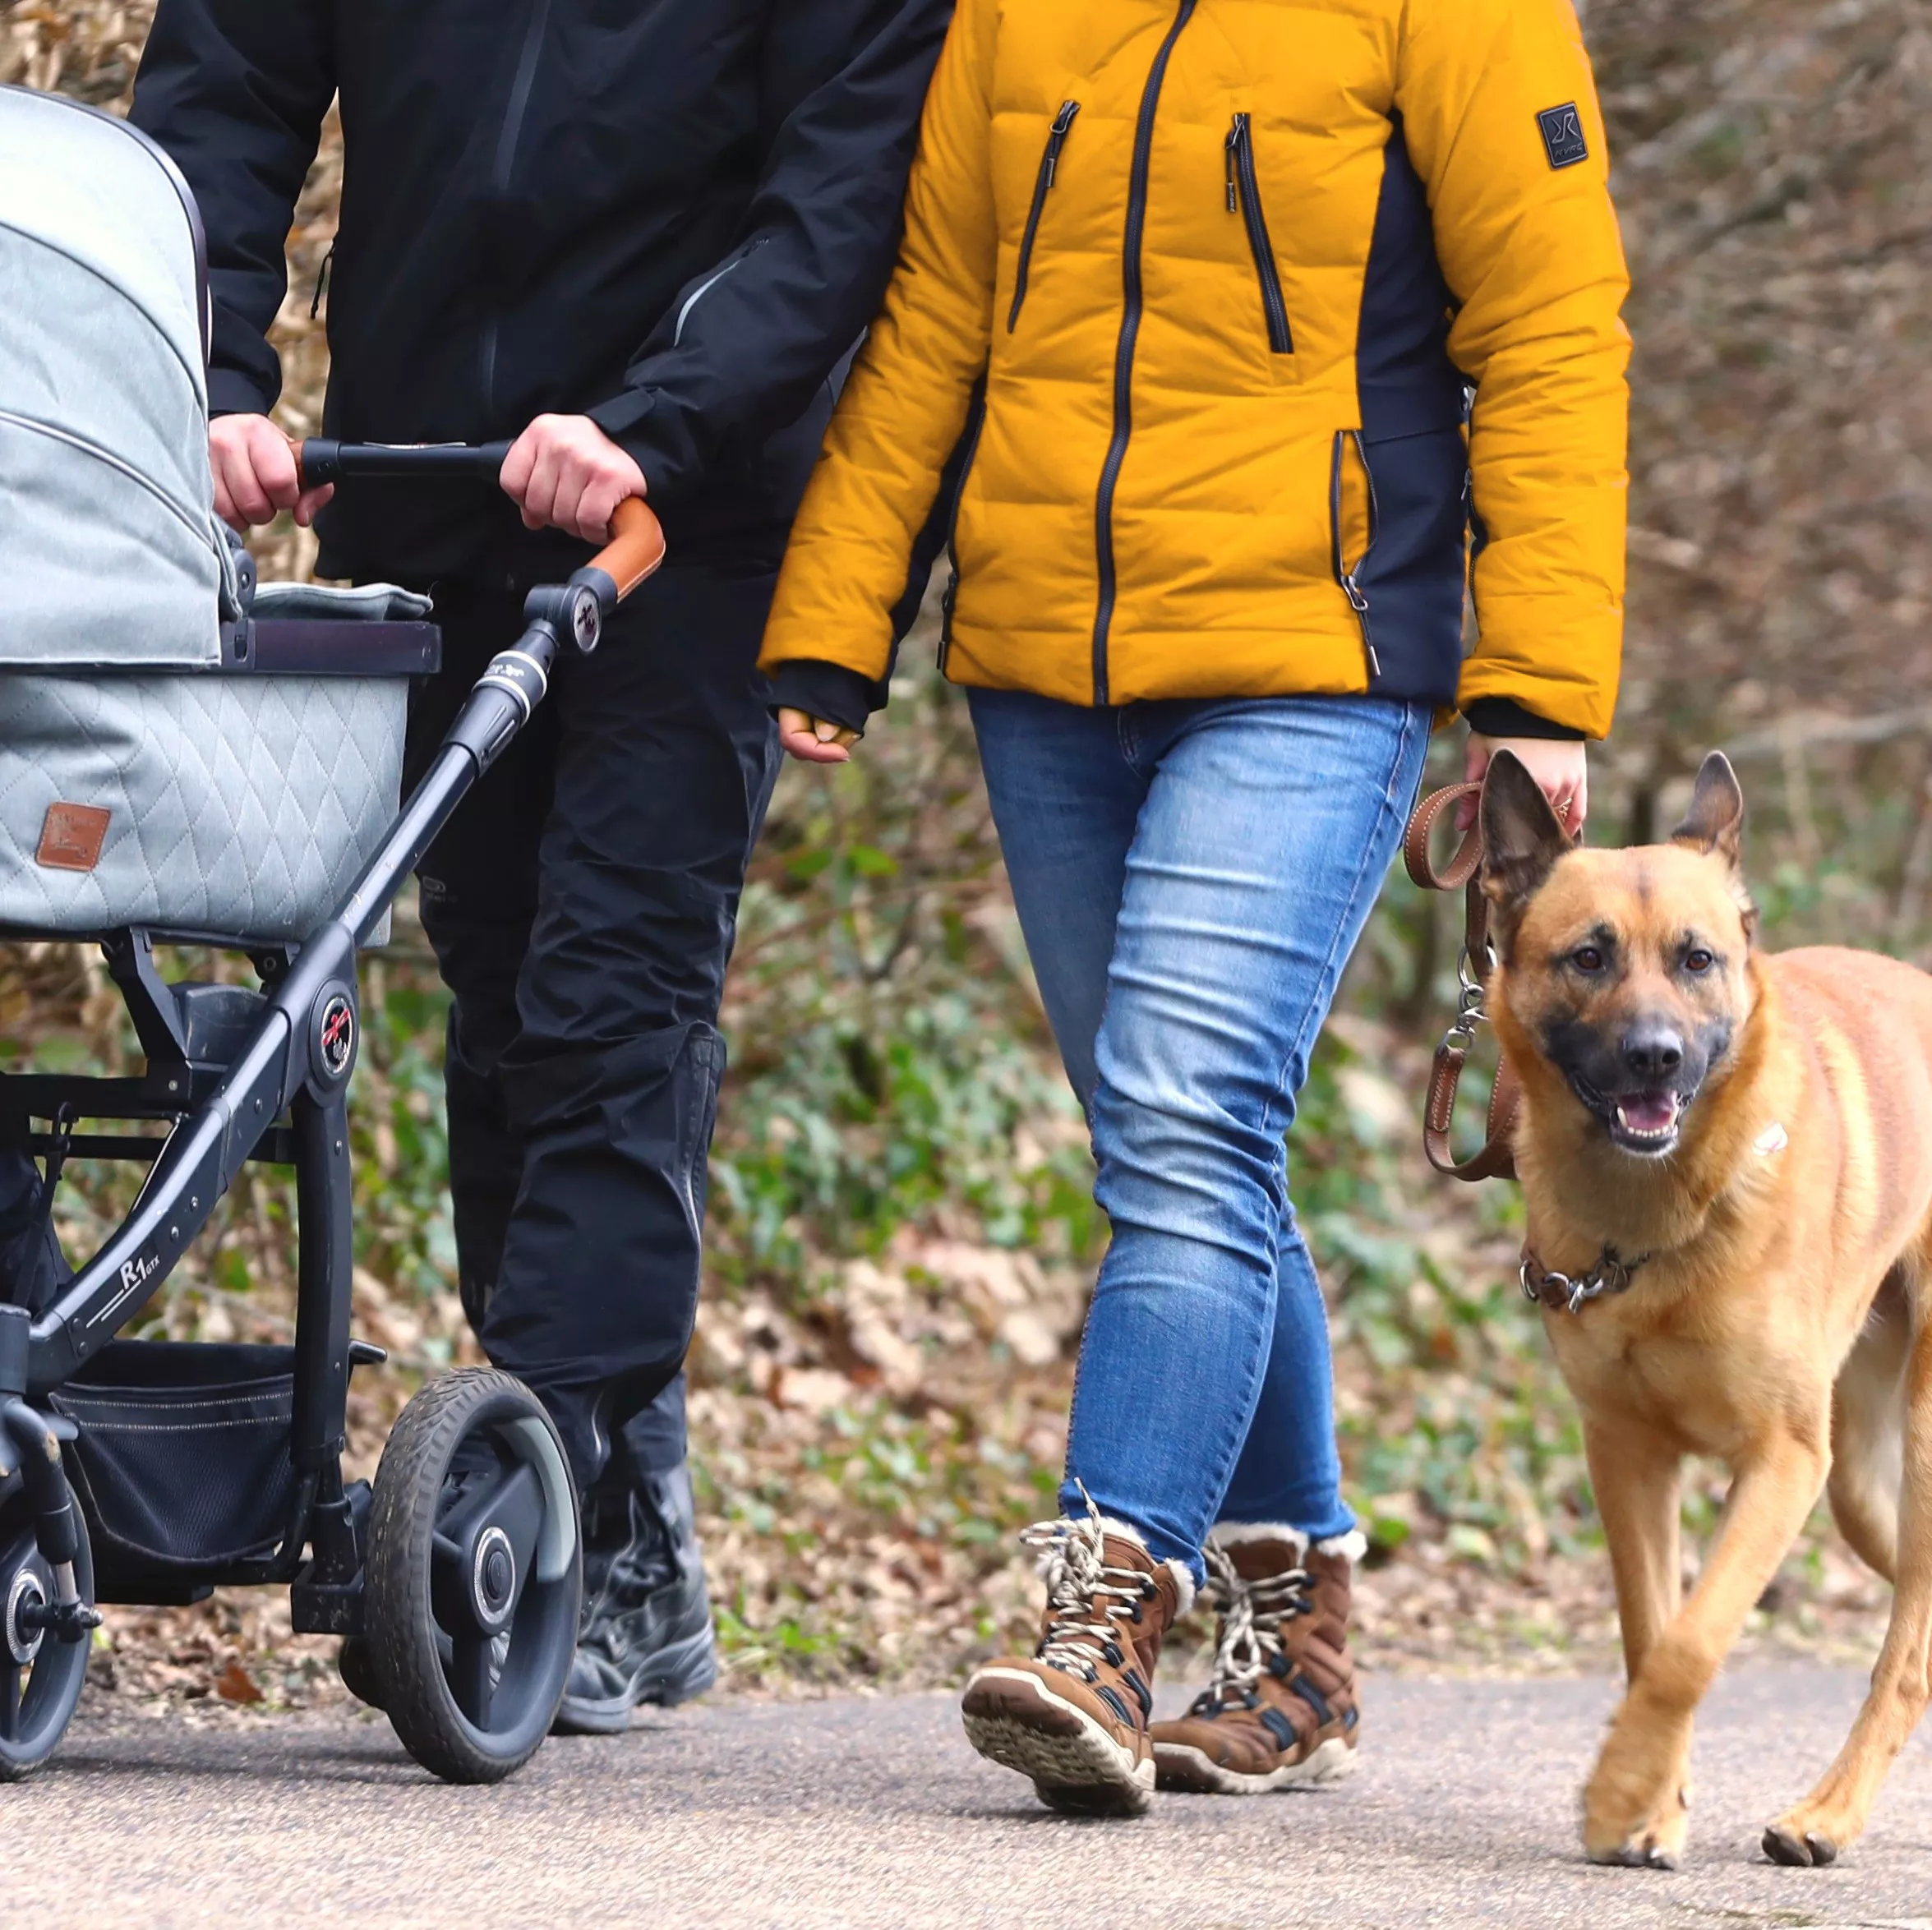 Zwei Menschen, deren Köpfe man nicht sieht, gehen mit einem Kinderwagen und einem Schäferhund an der Leine spazieren